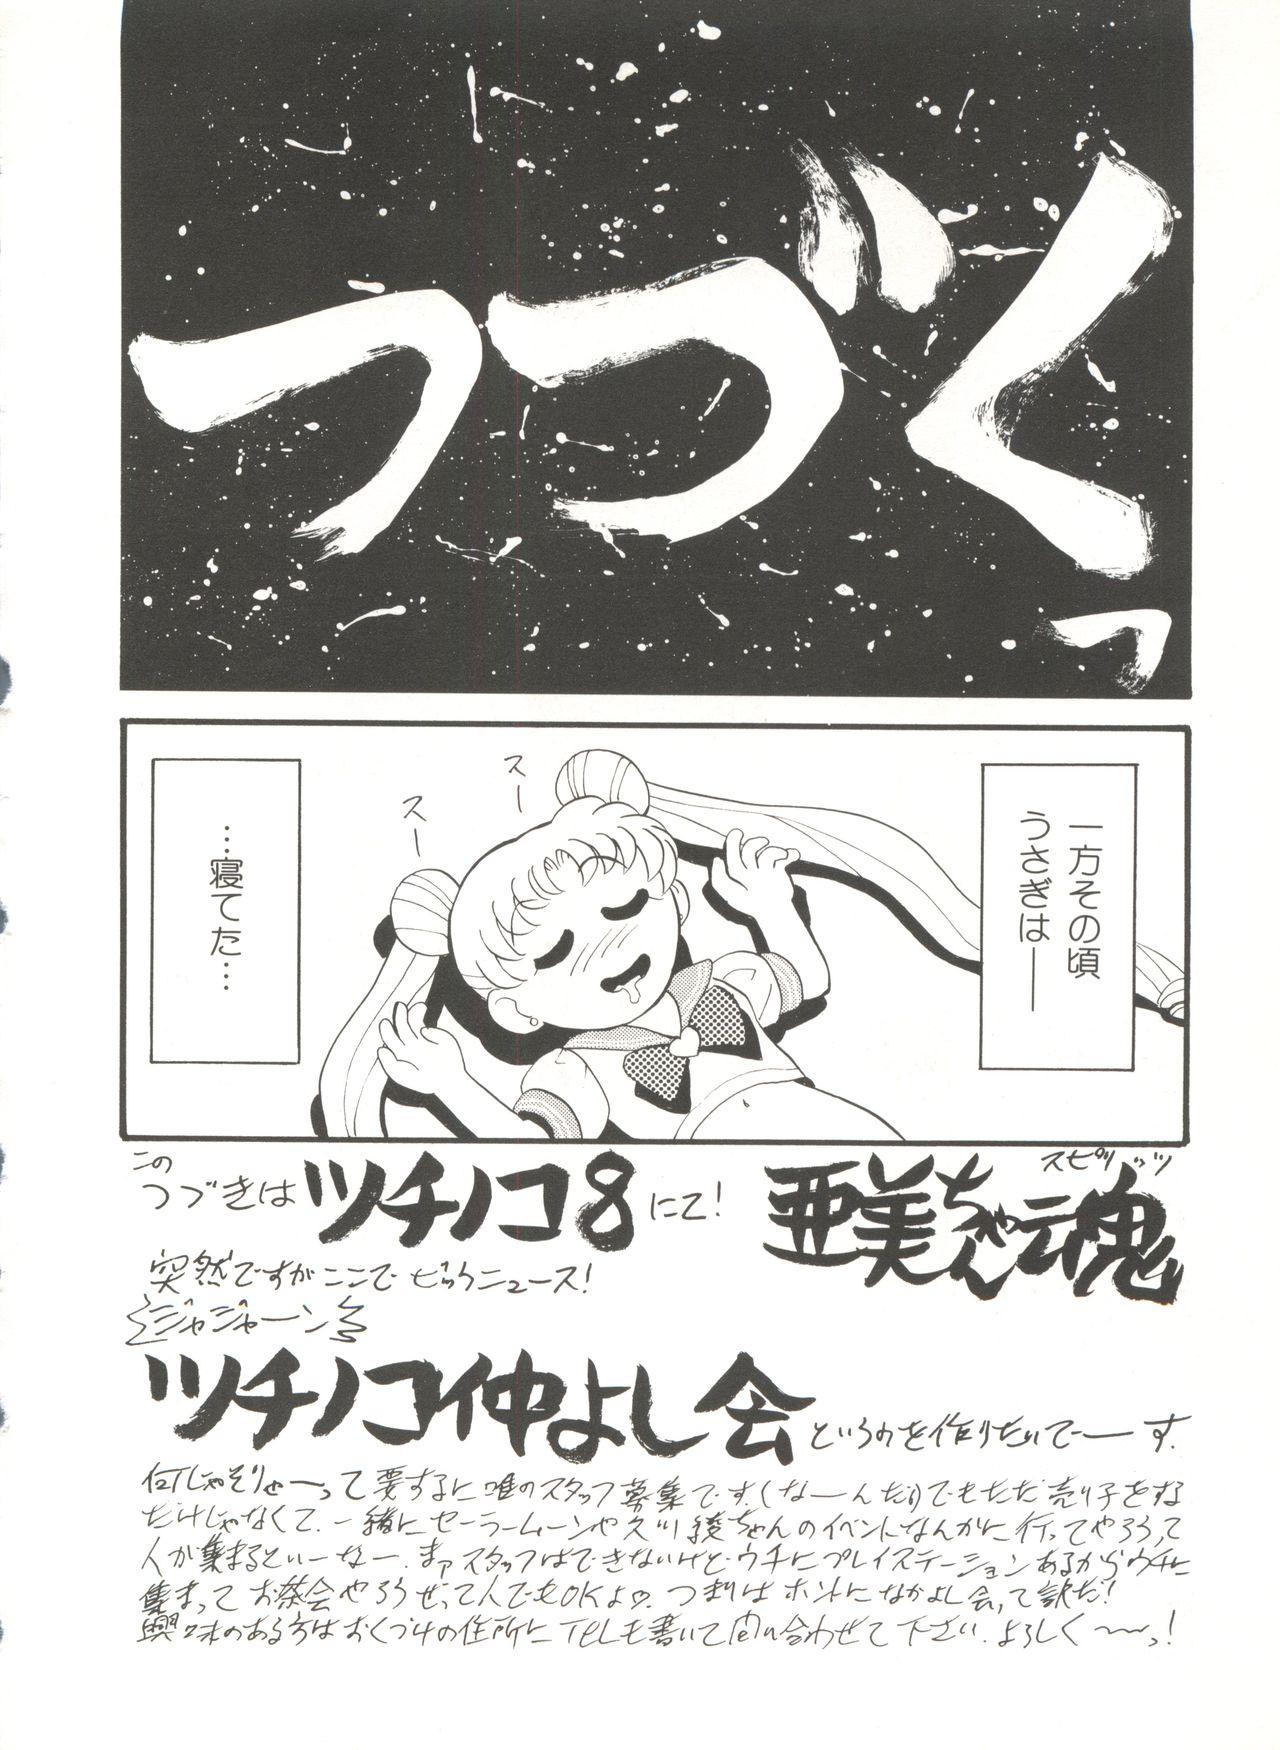 Bishoujo Doujinshi Anthology 16 - Moon Paradise 10 Tsuki no Rakuen 26